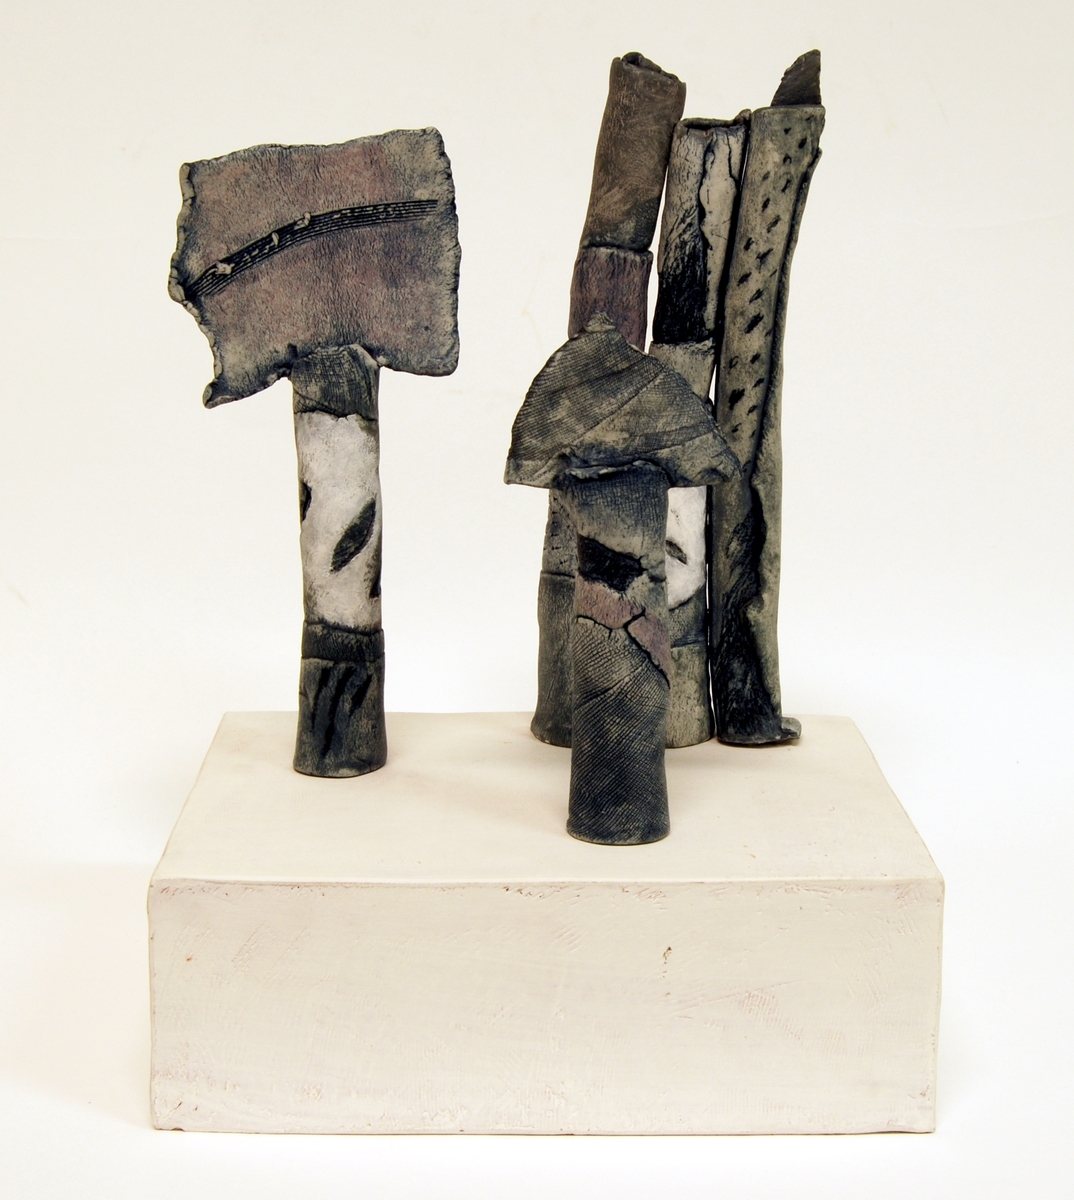 Skulptur i stengods på sockel av kaolinbestruken terrakotta. Skulpturen består av tre skilda vertikala "pelare" avslutade upptill (två av dem) med en tvärställd skiva. Mönstrad gråblå yta. Signerad nedtill på podiets kortsida: "Ninna Gunnarsson".